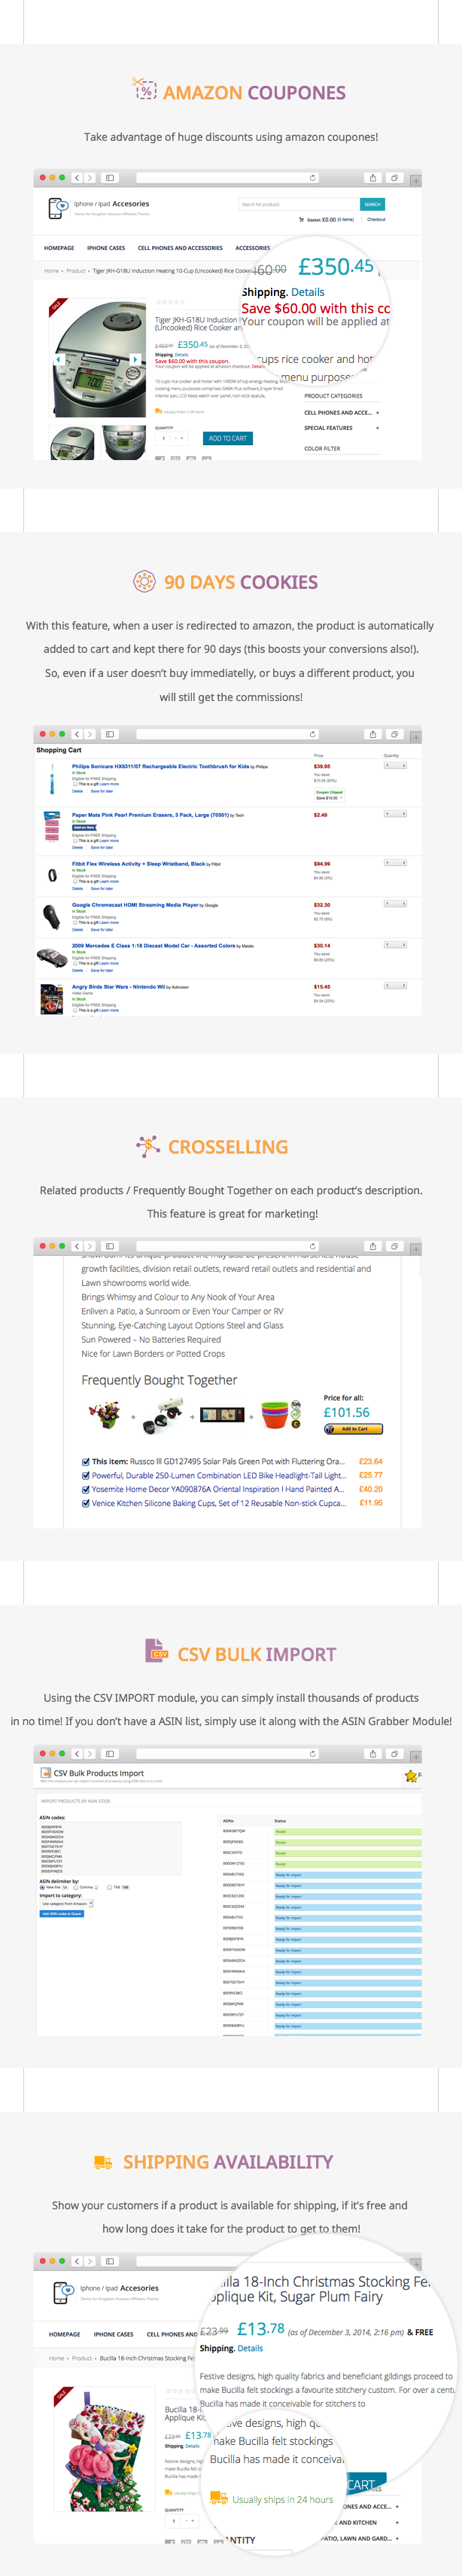 WooCommerce Amazon Affiliates - Wordpress Plugin - 52